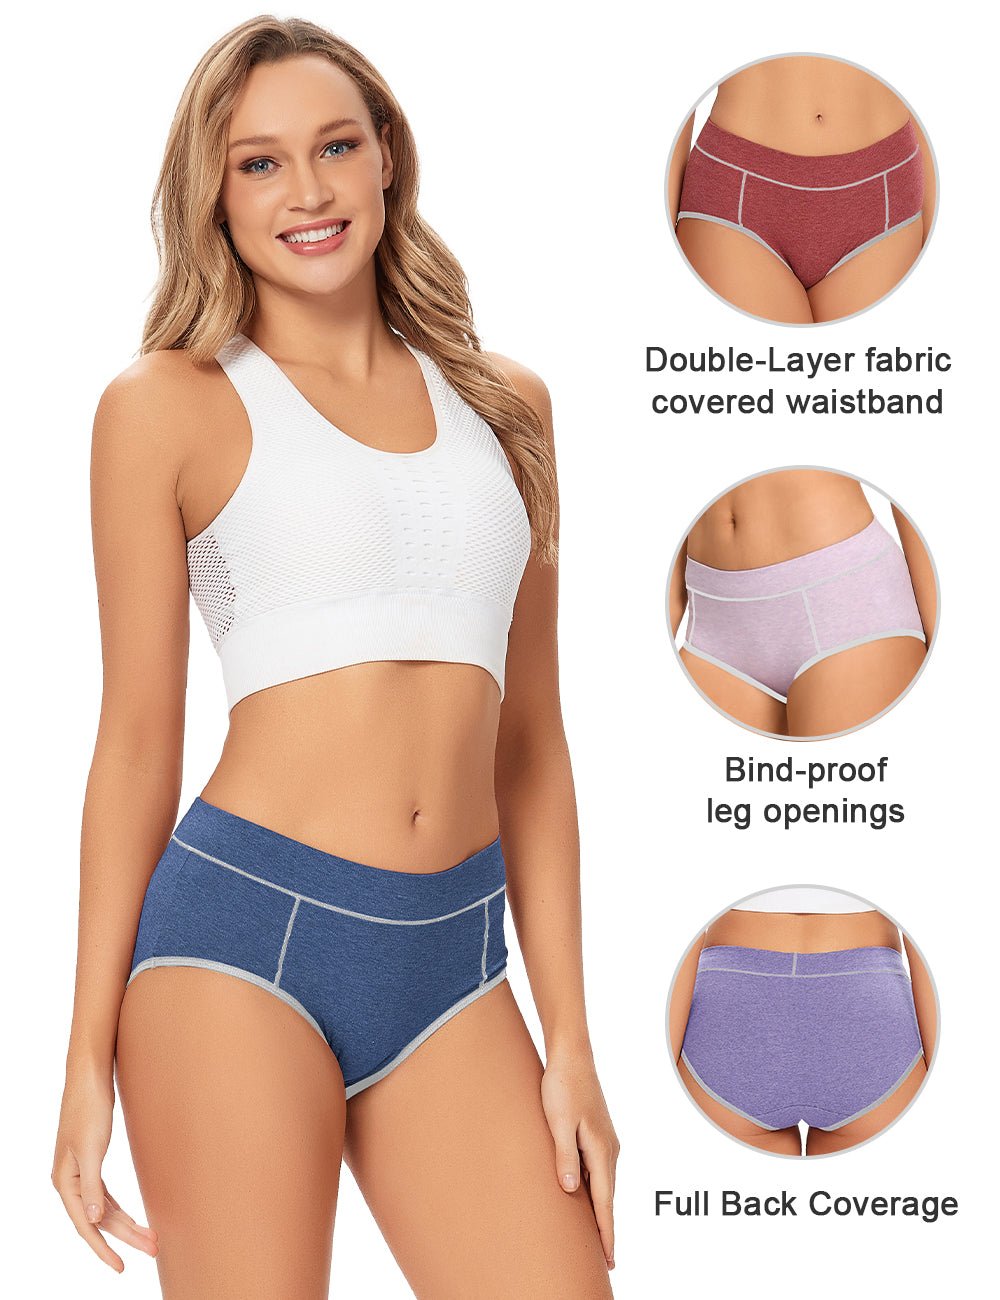 Women's High Waisted Cotton Underwear Ladies Soft Full Briefs